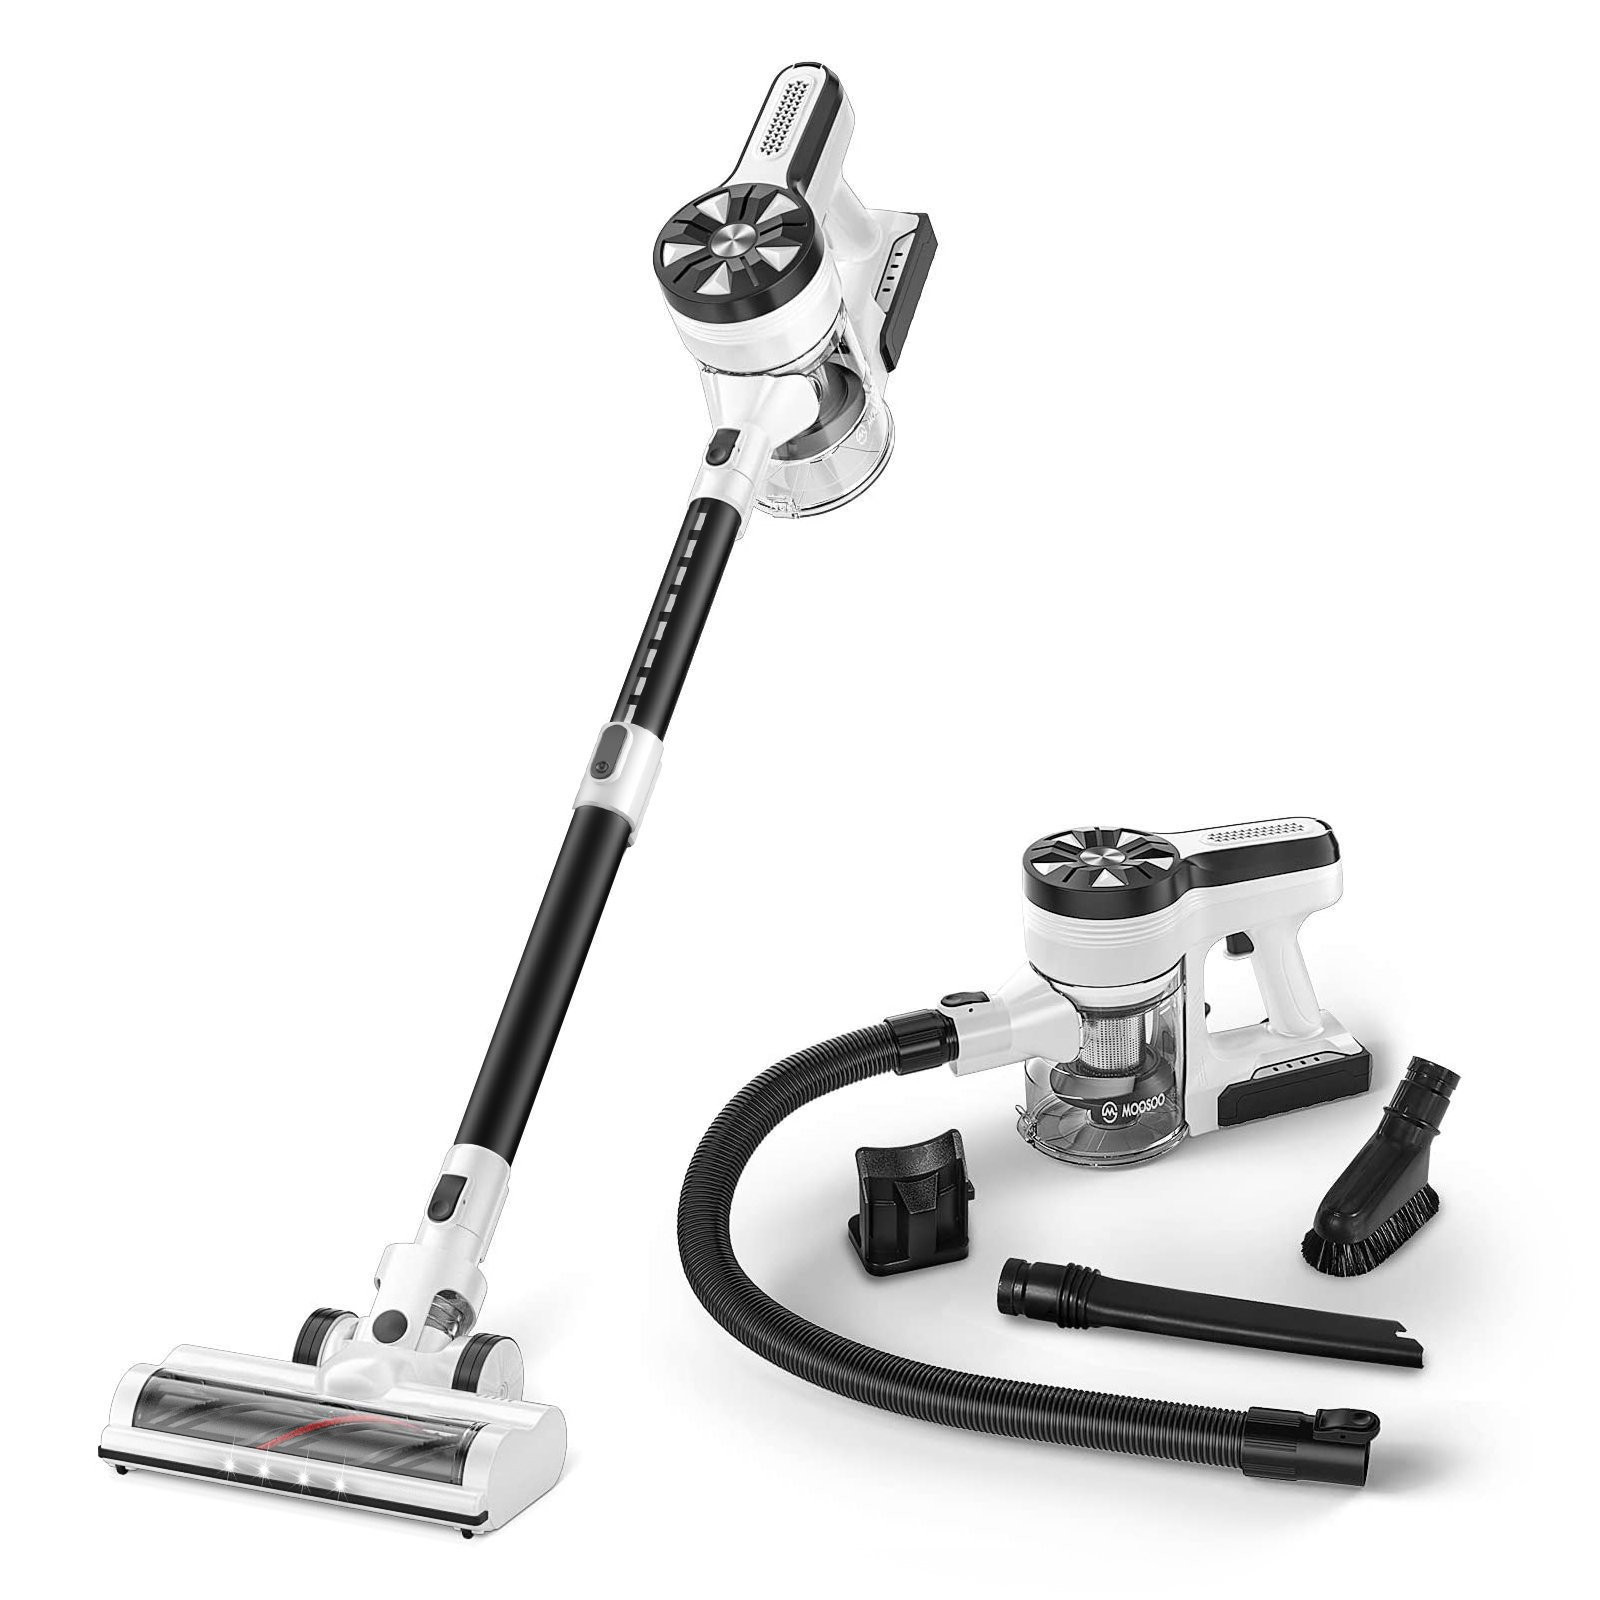 Moosoo 5-In-1 Lightweight Cordless Vacuum Cleaner, M24-S